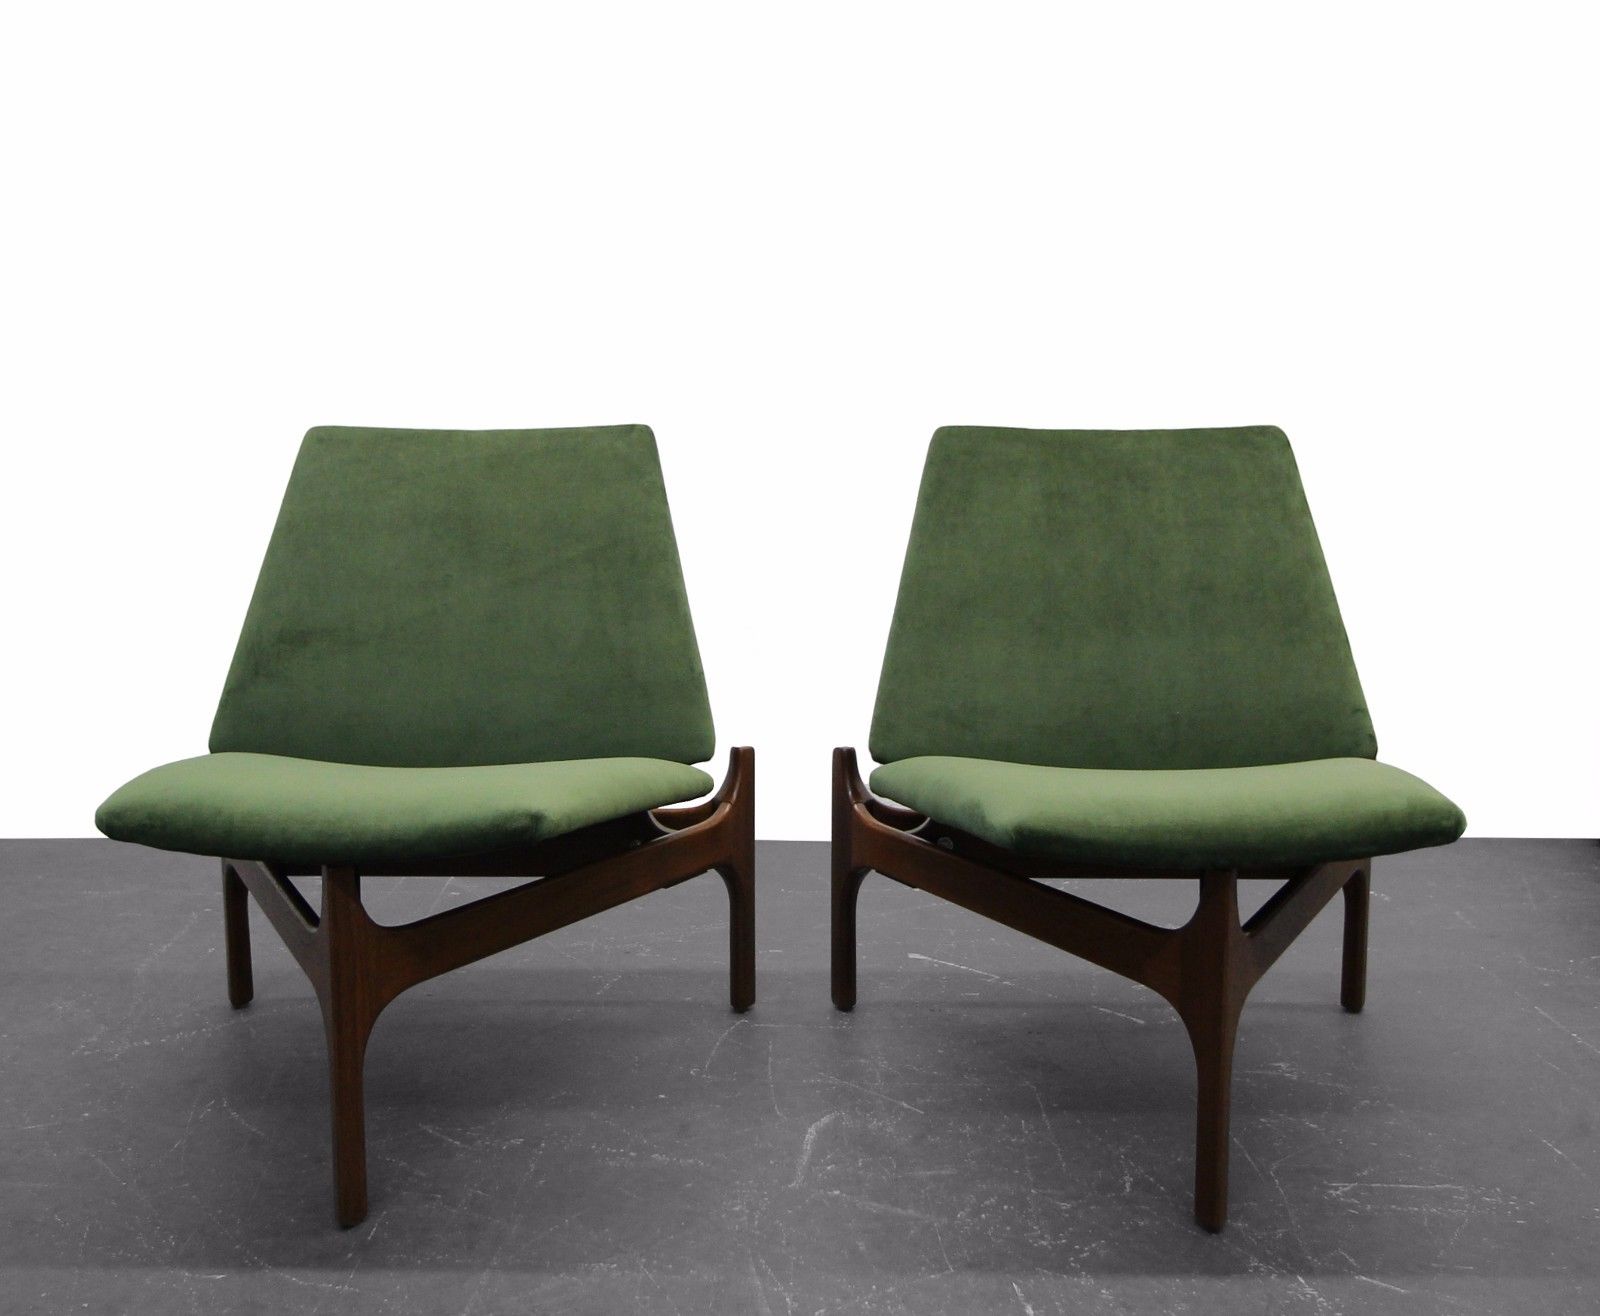 Les lounge chairs les plus élégants et luxueux trouvés sur eBay ! 